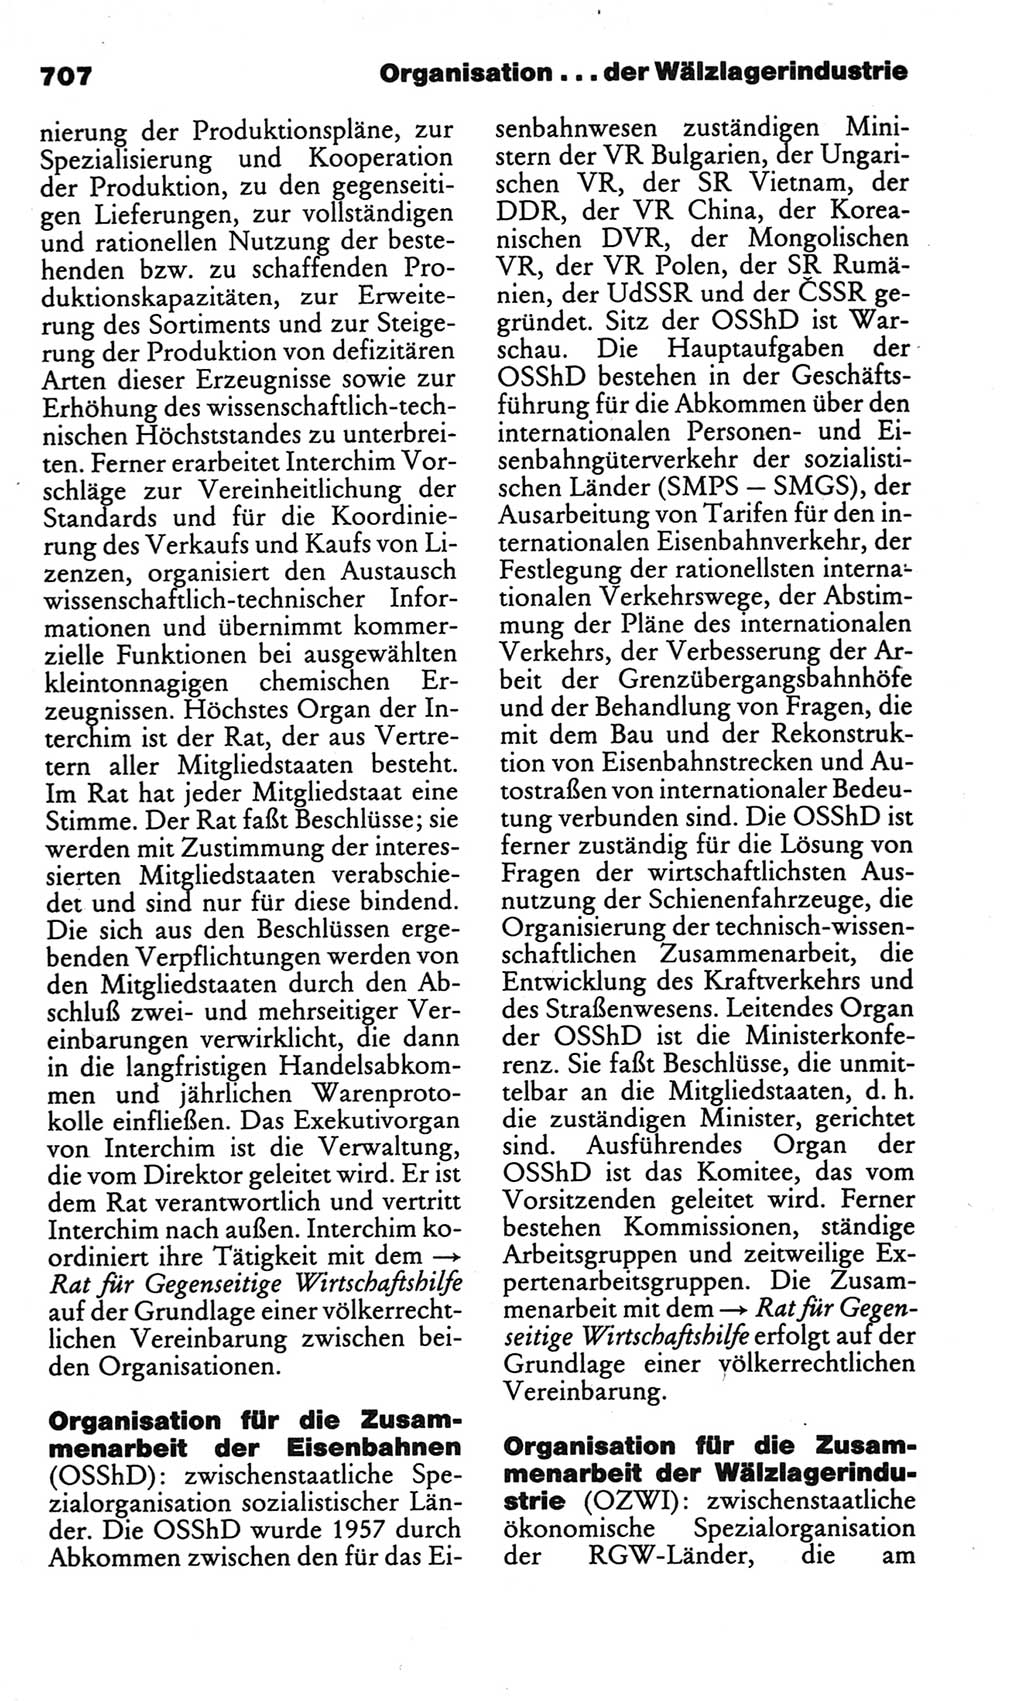 Kleines politisches Wörterbuch [Deutsche Demokratische Republik (DDR)] 1986, Seite 707 (Kl. pol. Wb. DDR 1986, S. 707)